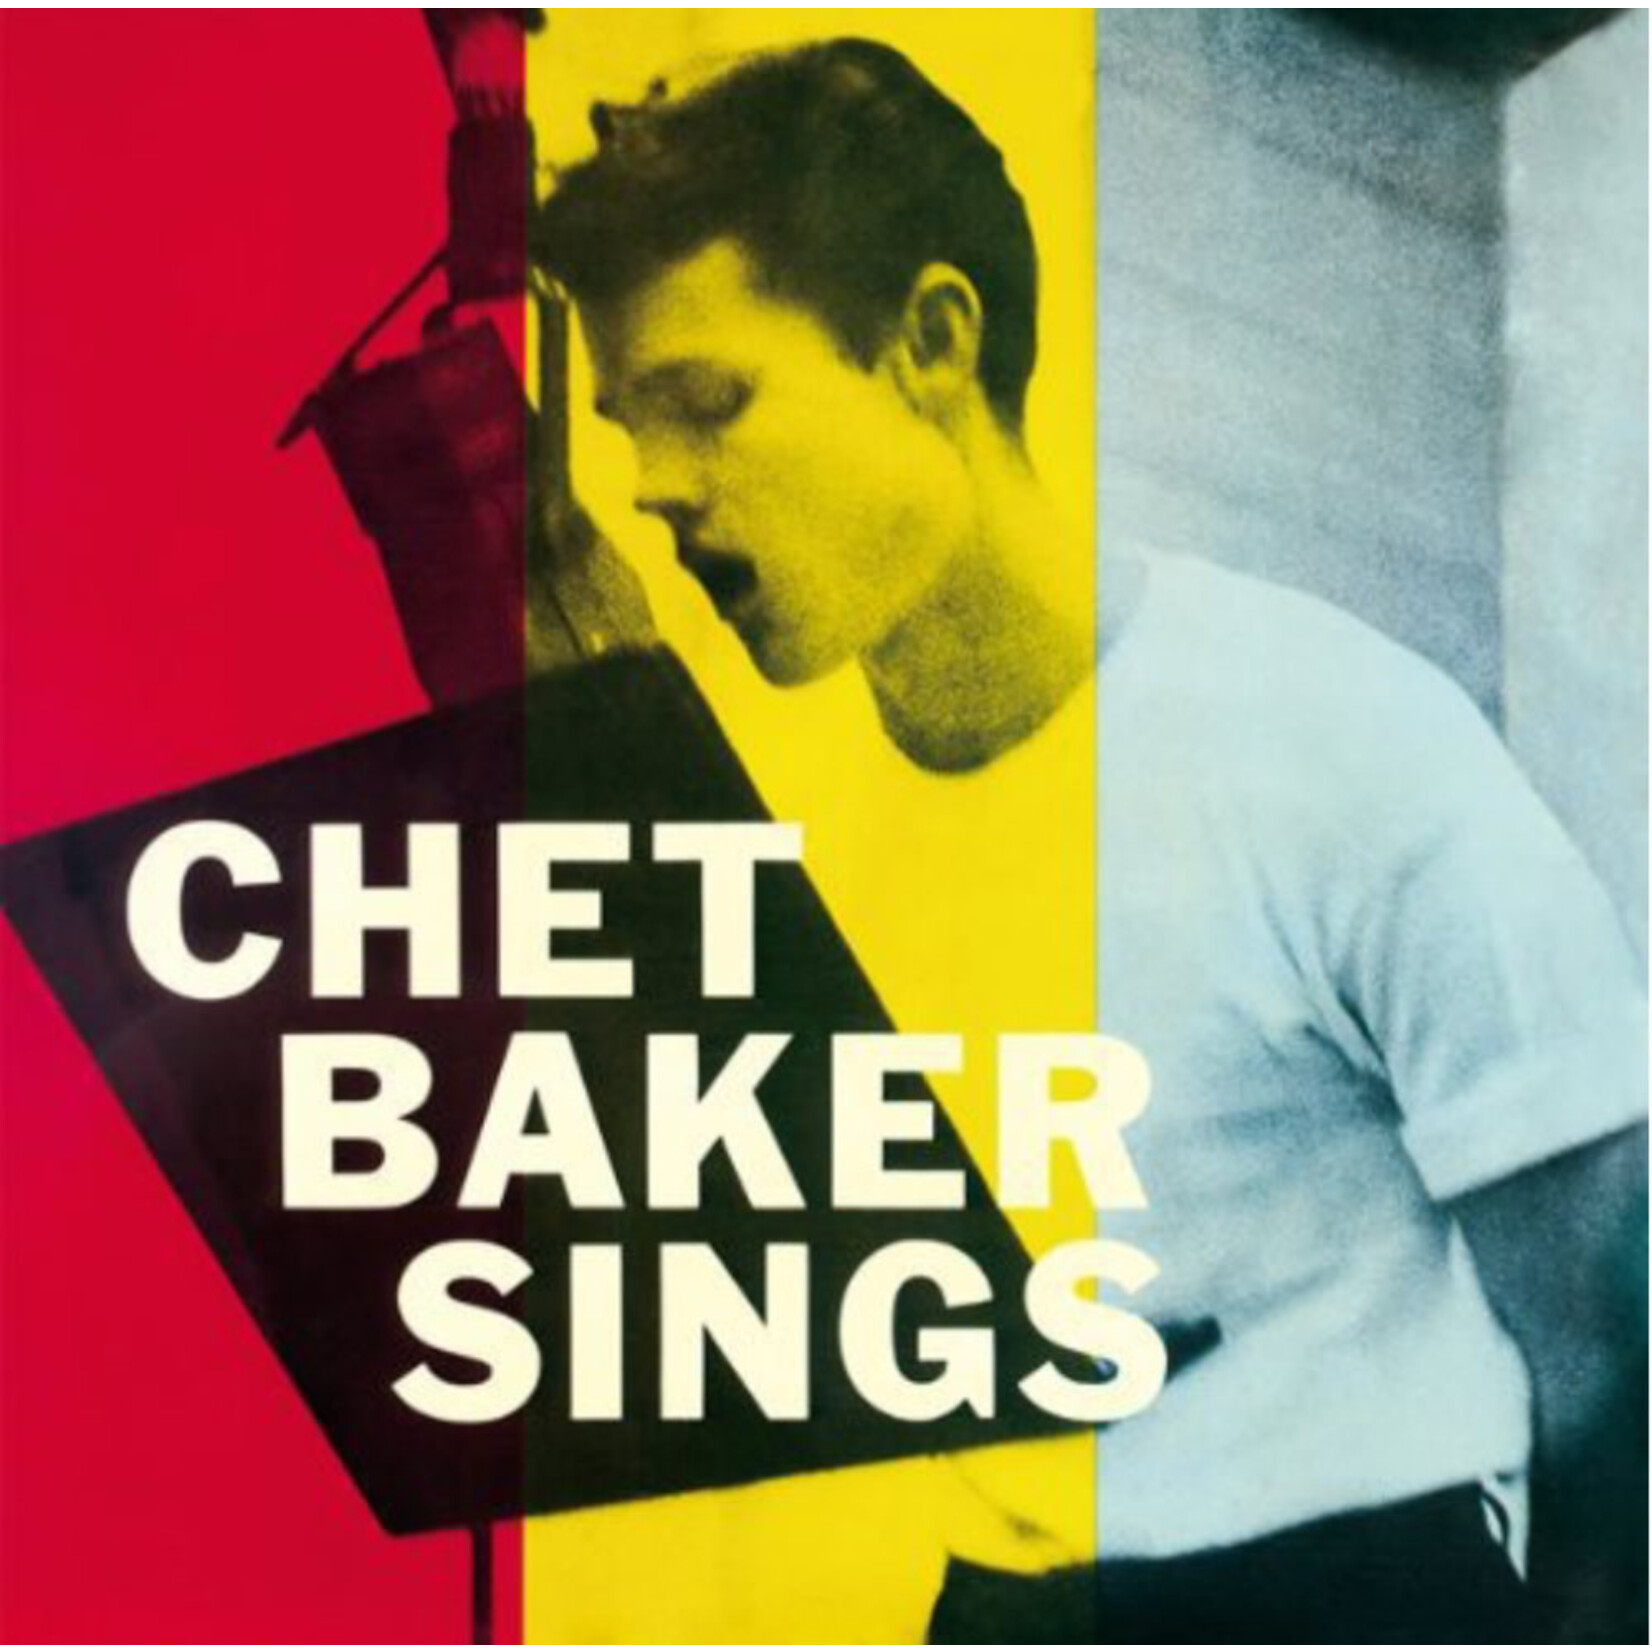 Chet Baker - Sings - Vinyl LP (NEW)